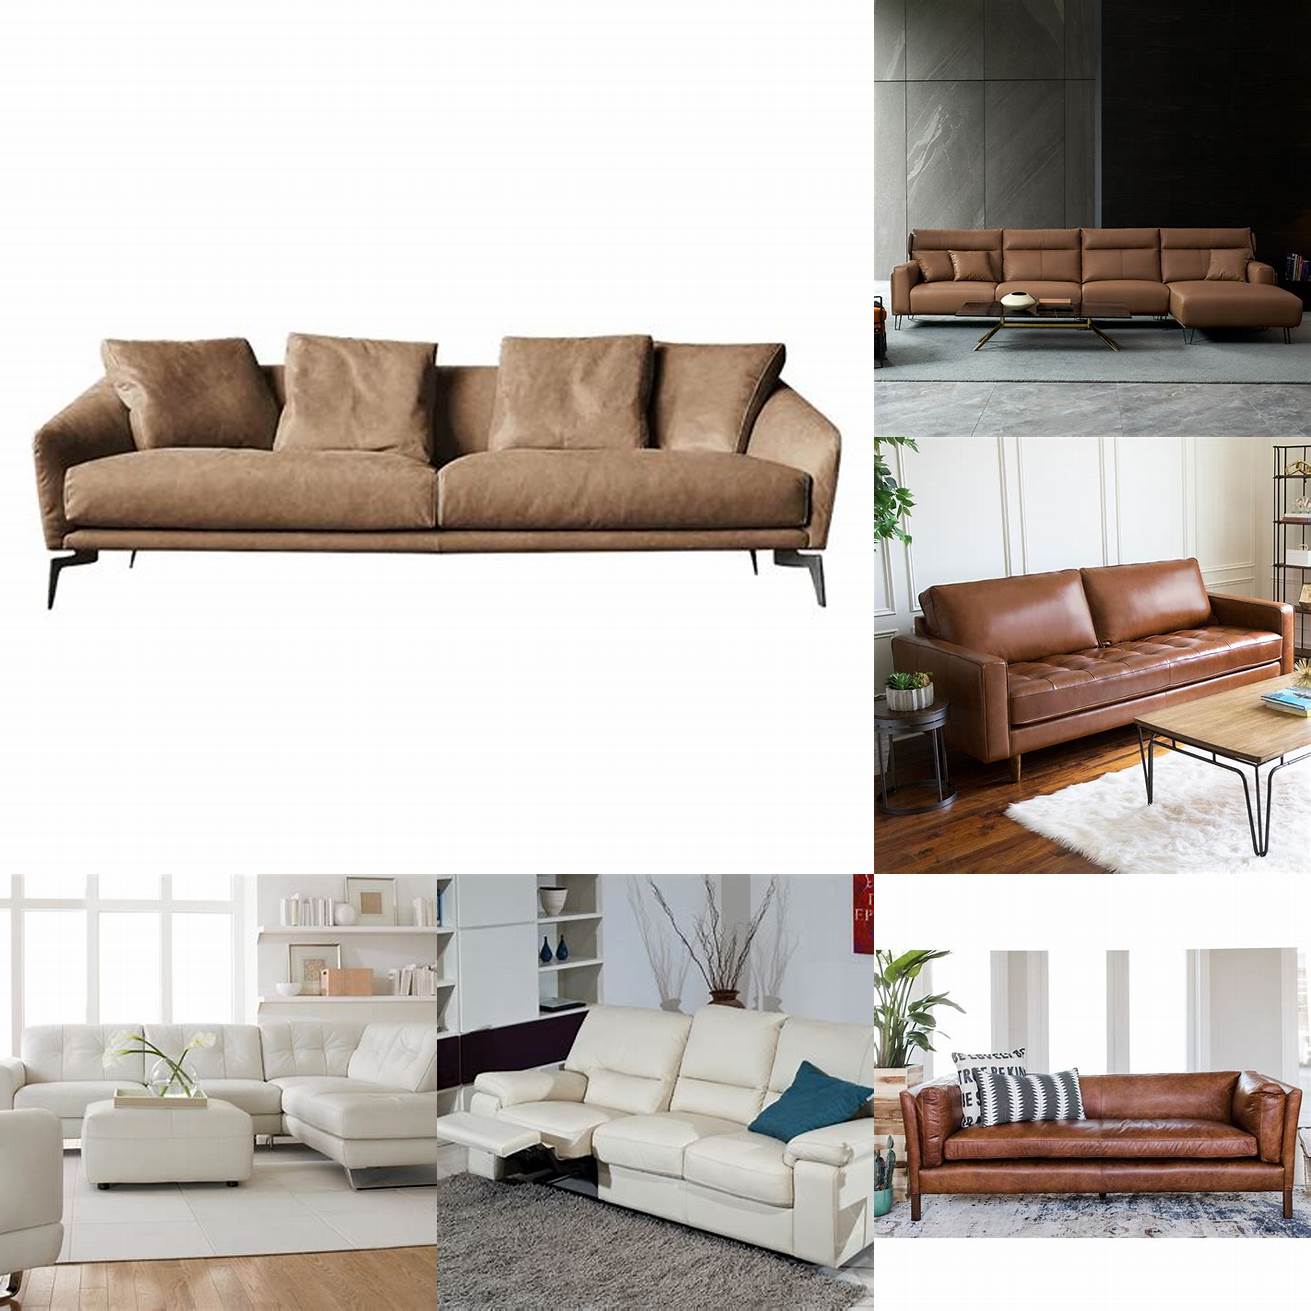 Minimalist leather sofa